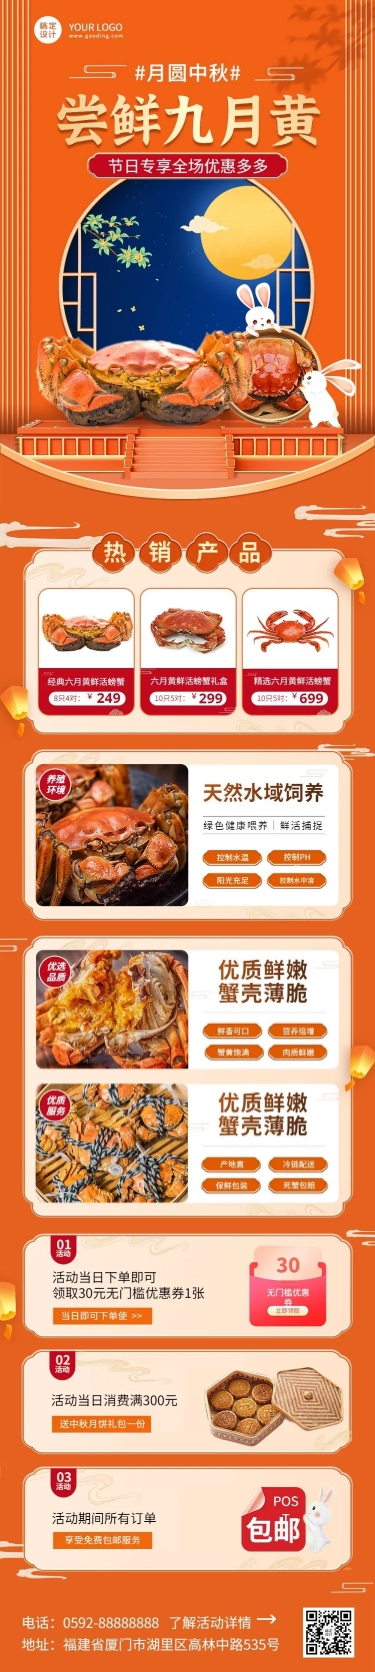 中秋节餐饮美食海鲜节日营销文章长图